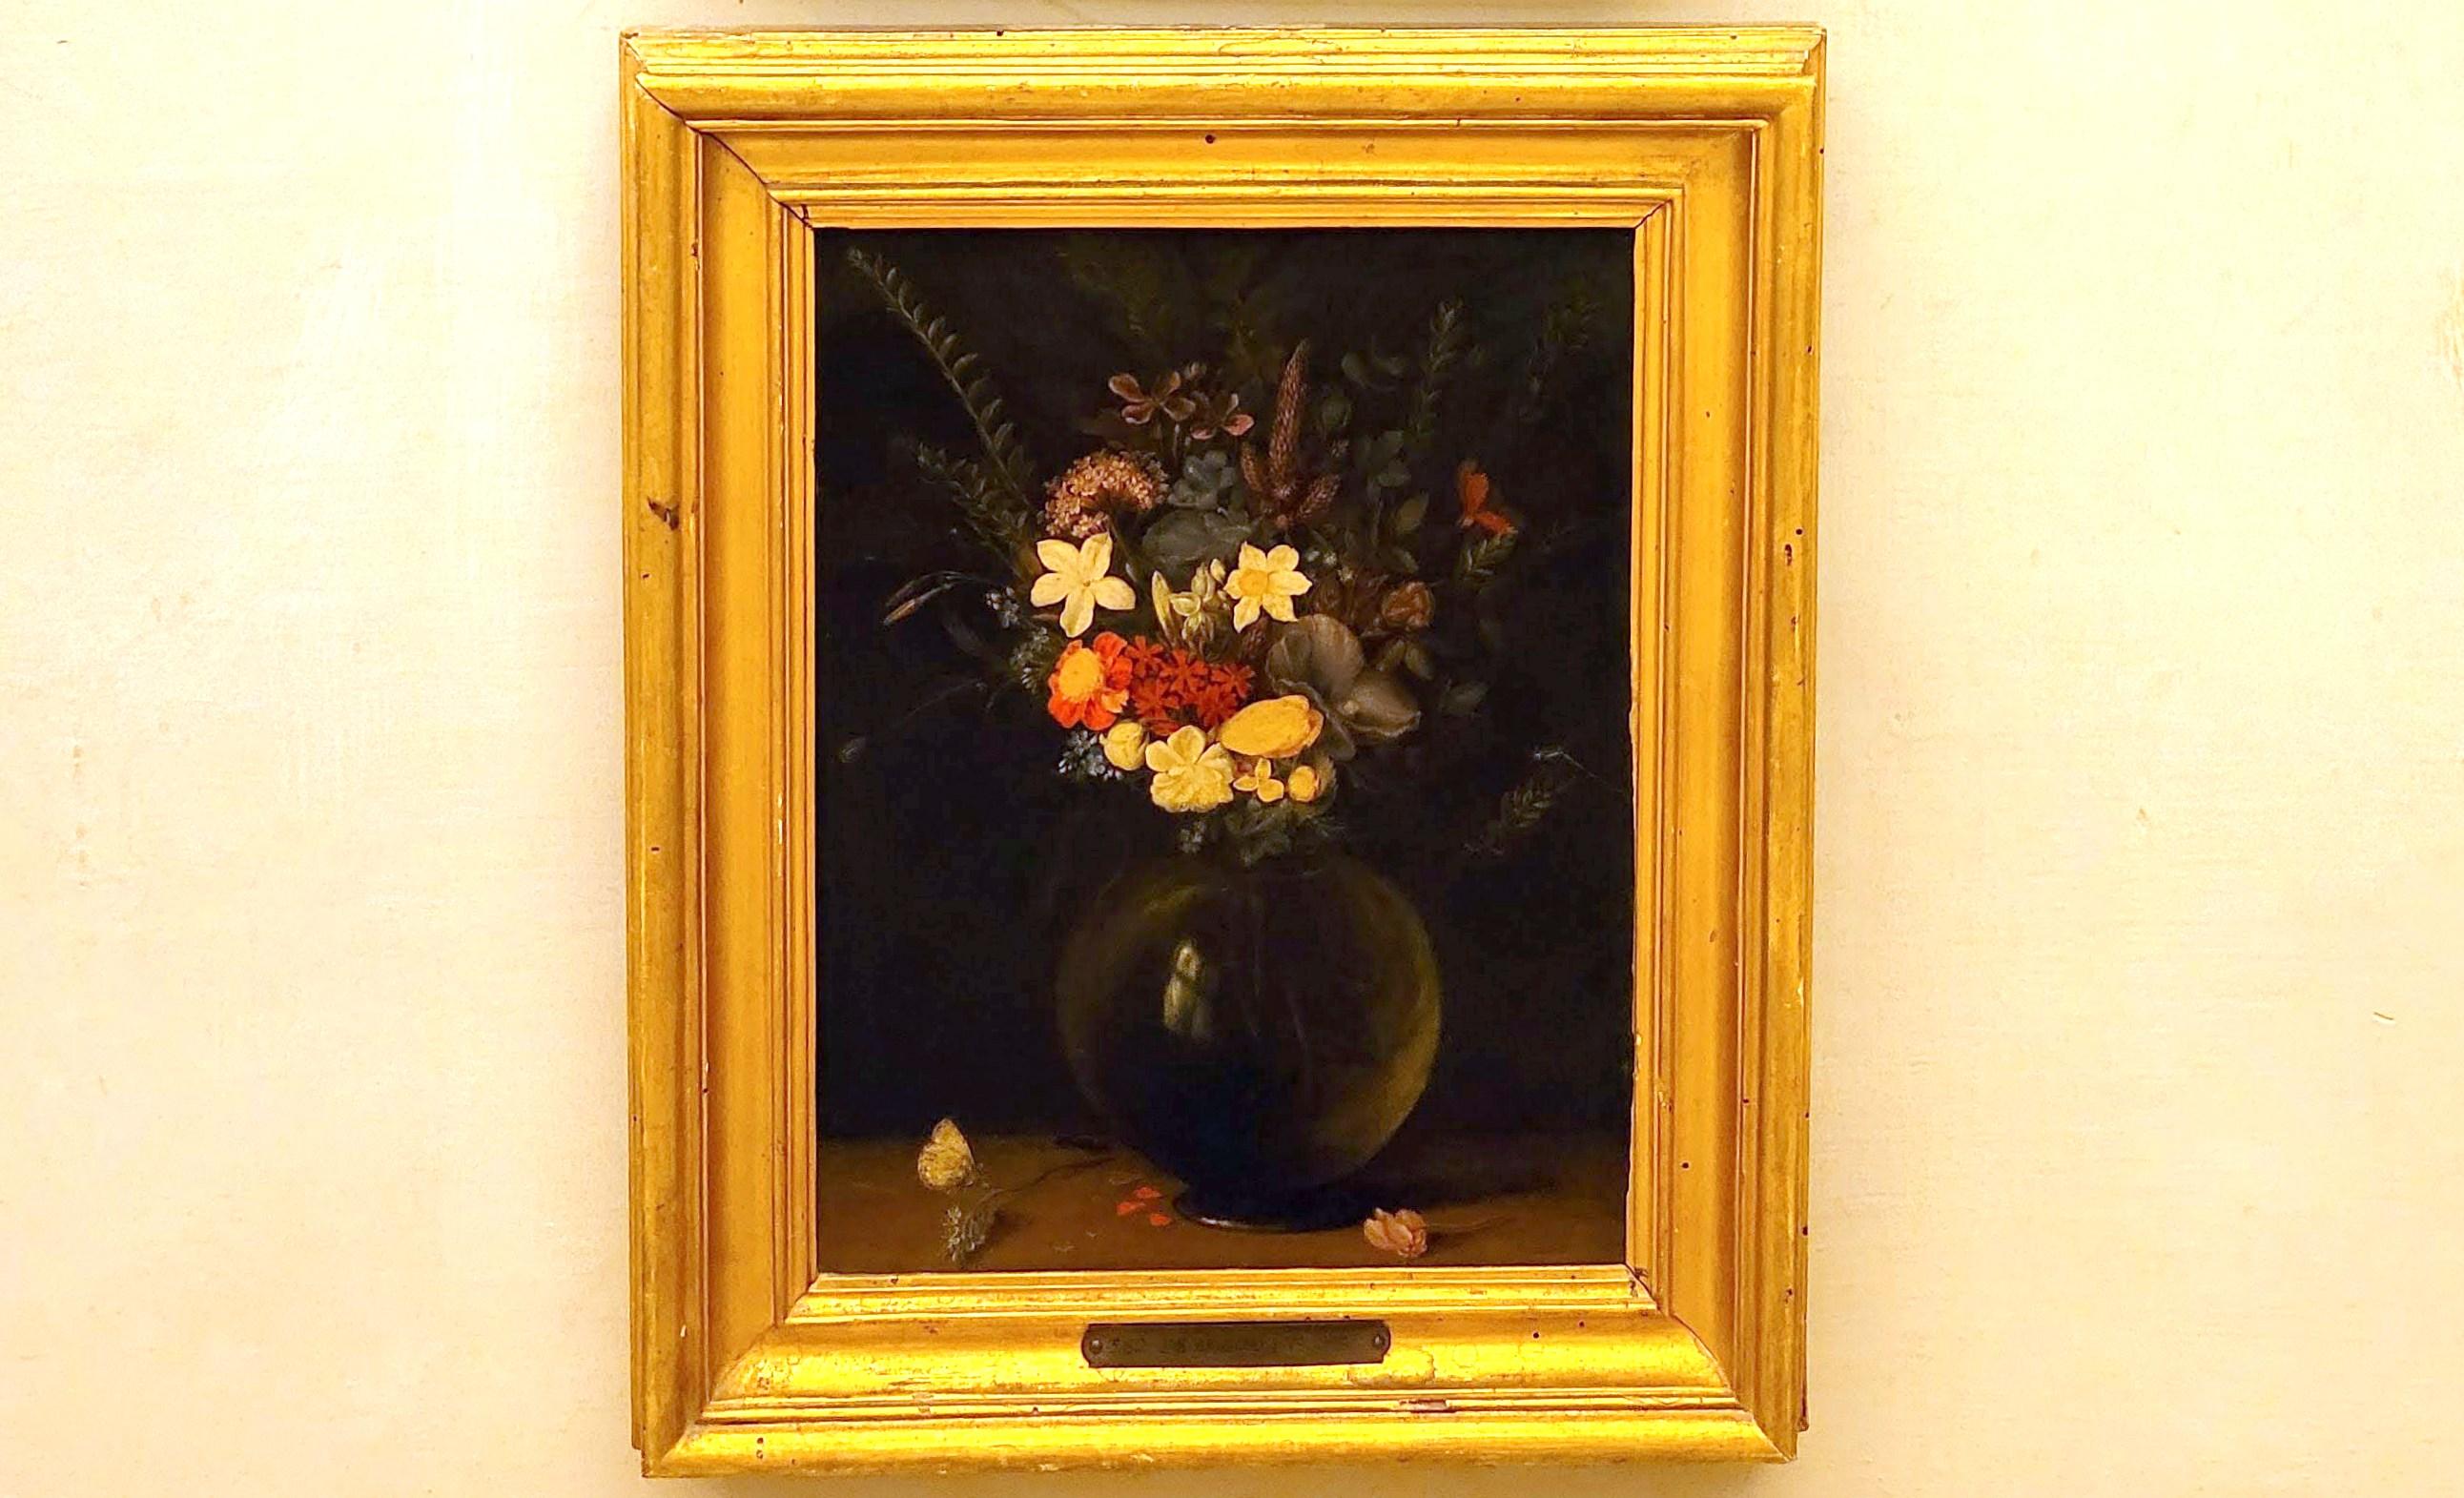 Jan Brueghel der Ältere (Samtbrueghel, Blumenbrueghel) (1593–1621), Vase mit Blumen, Rom, Villa Borghese, Galleria Borghese, um 1591–1595